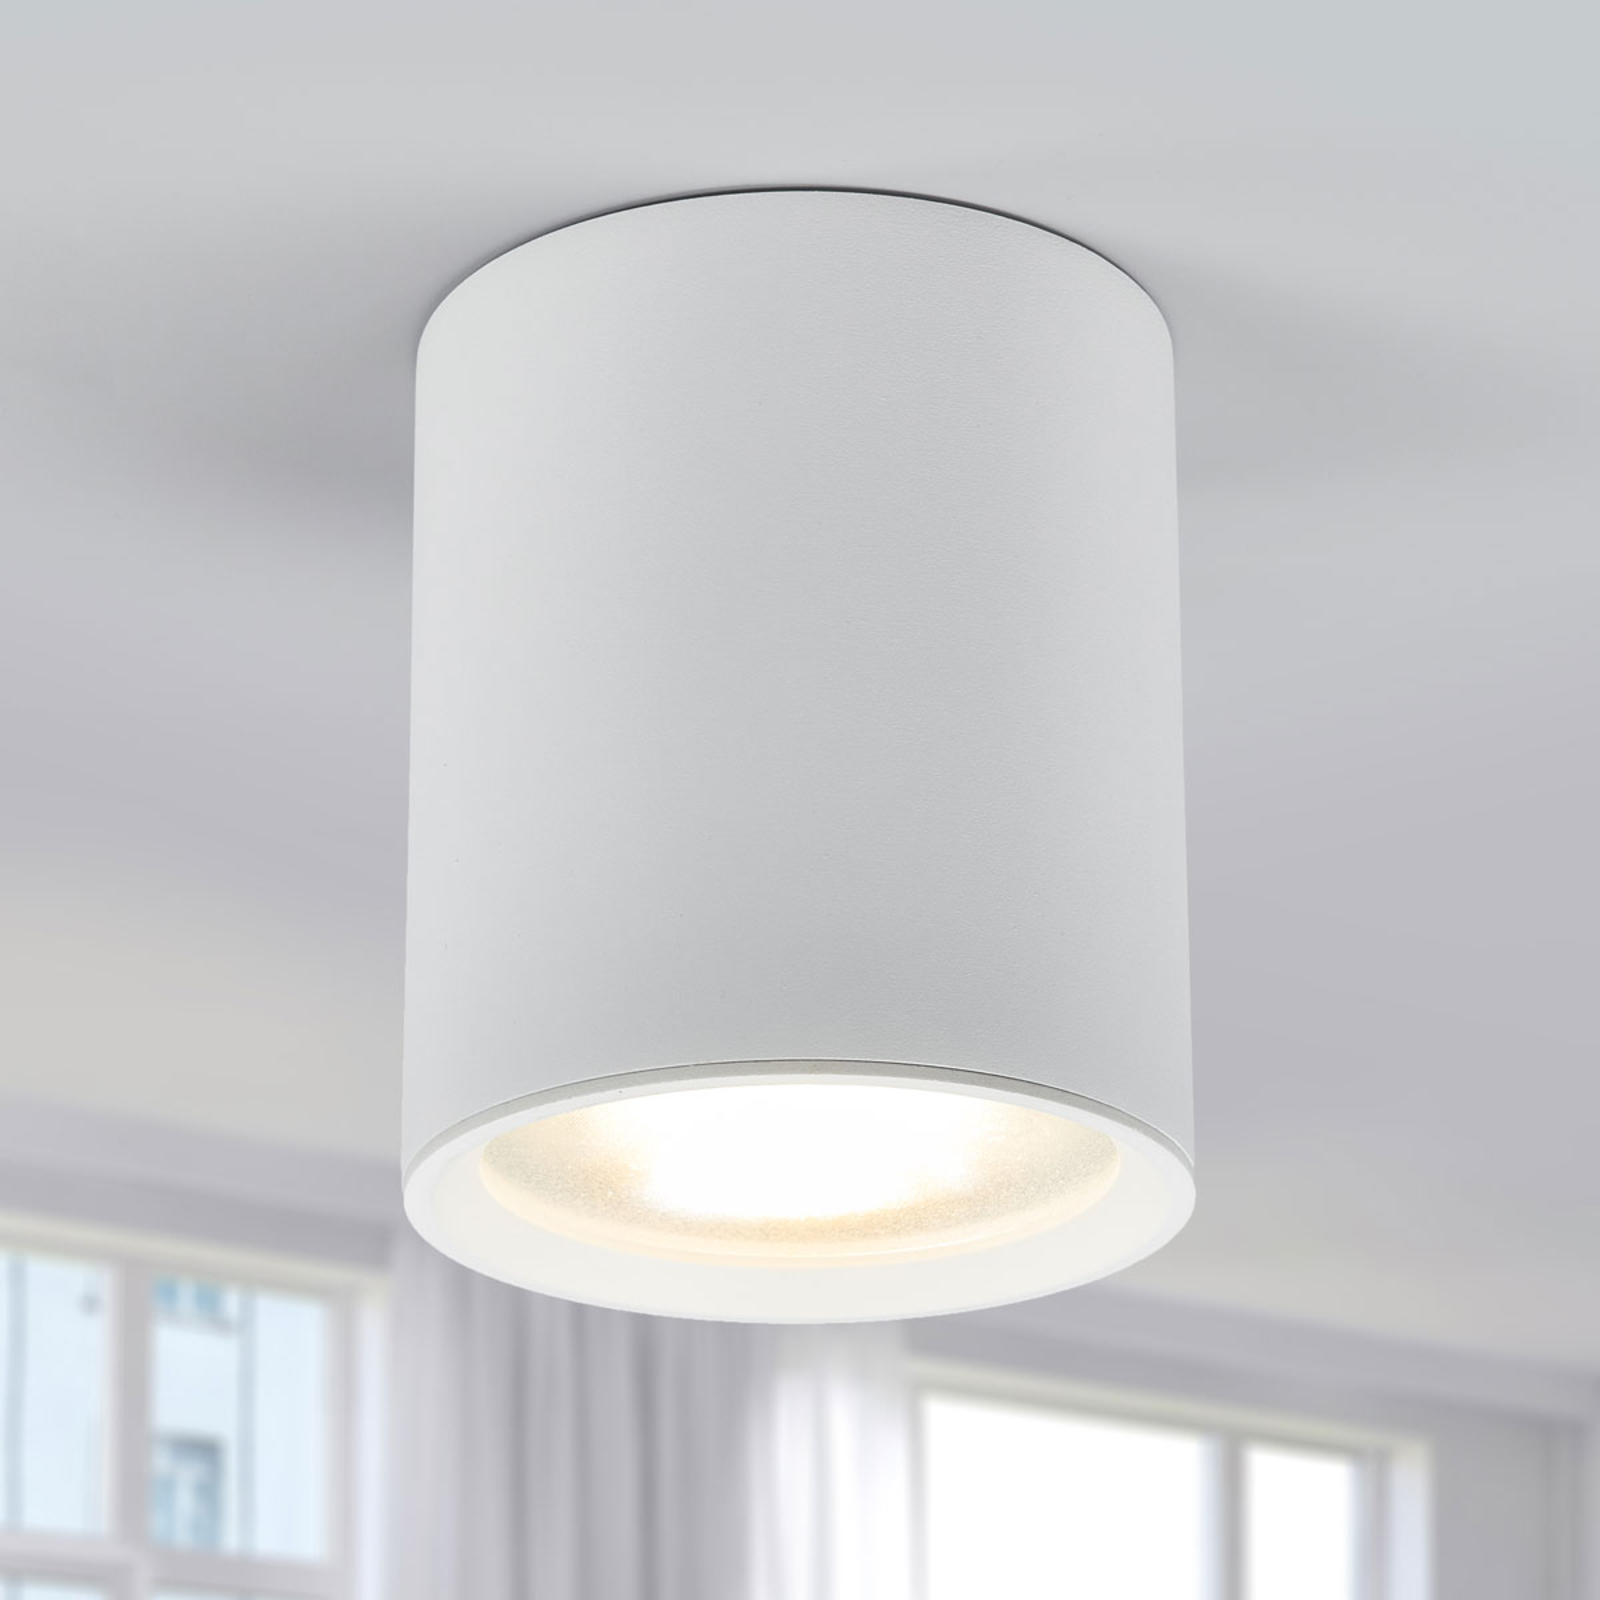 Benk LED ceiling light, 13 cm, 12.3 W